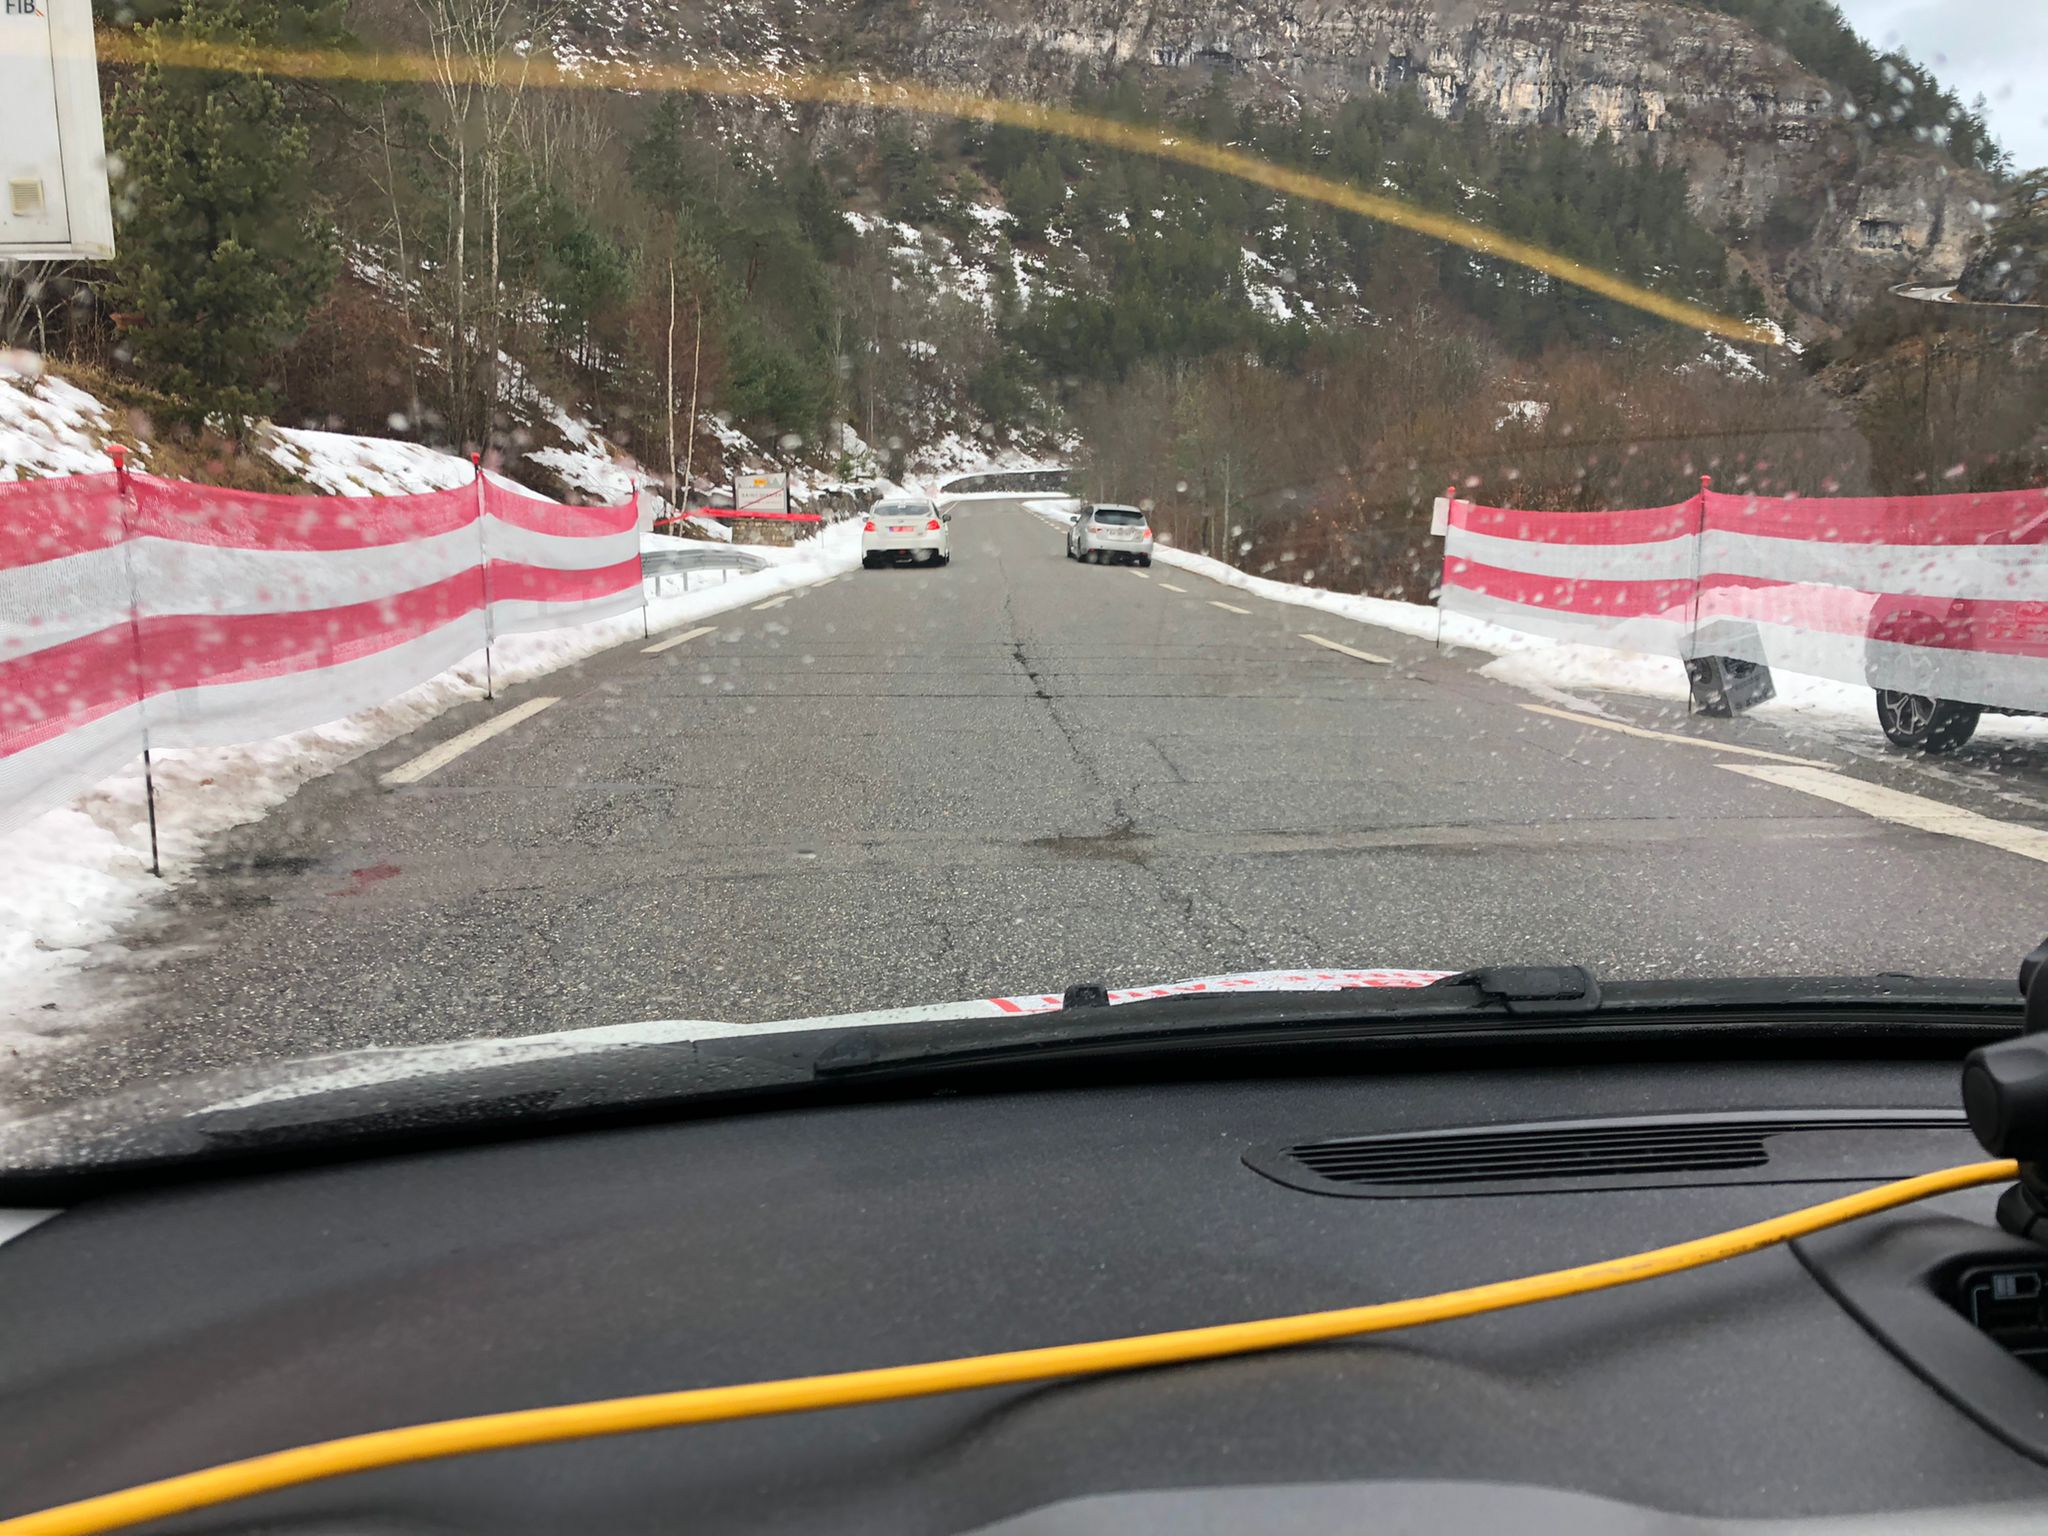 wrc - WRC: 89º Rallye Automobile de Monte-Carlo [18-24 Enero] - Página 3 Ps_1_alle_10